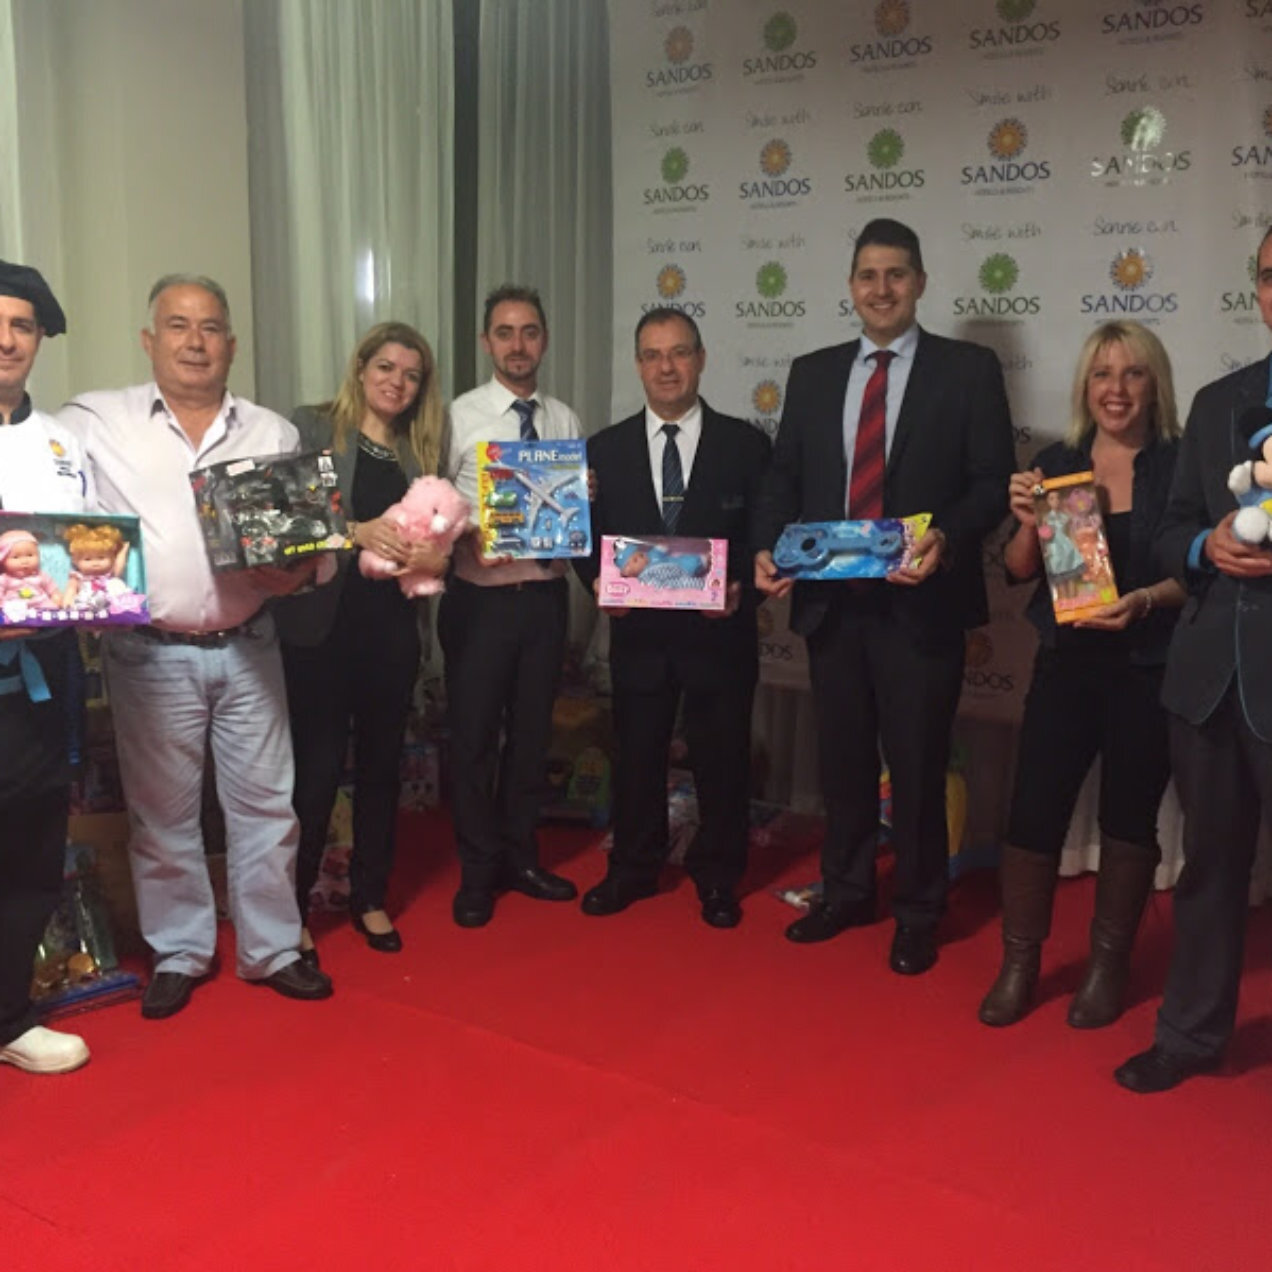 Campaña solidaria de recogida de juguetes en Benidorm